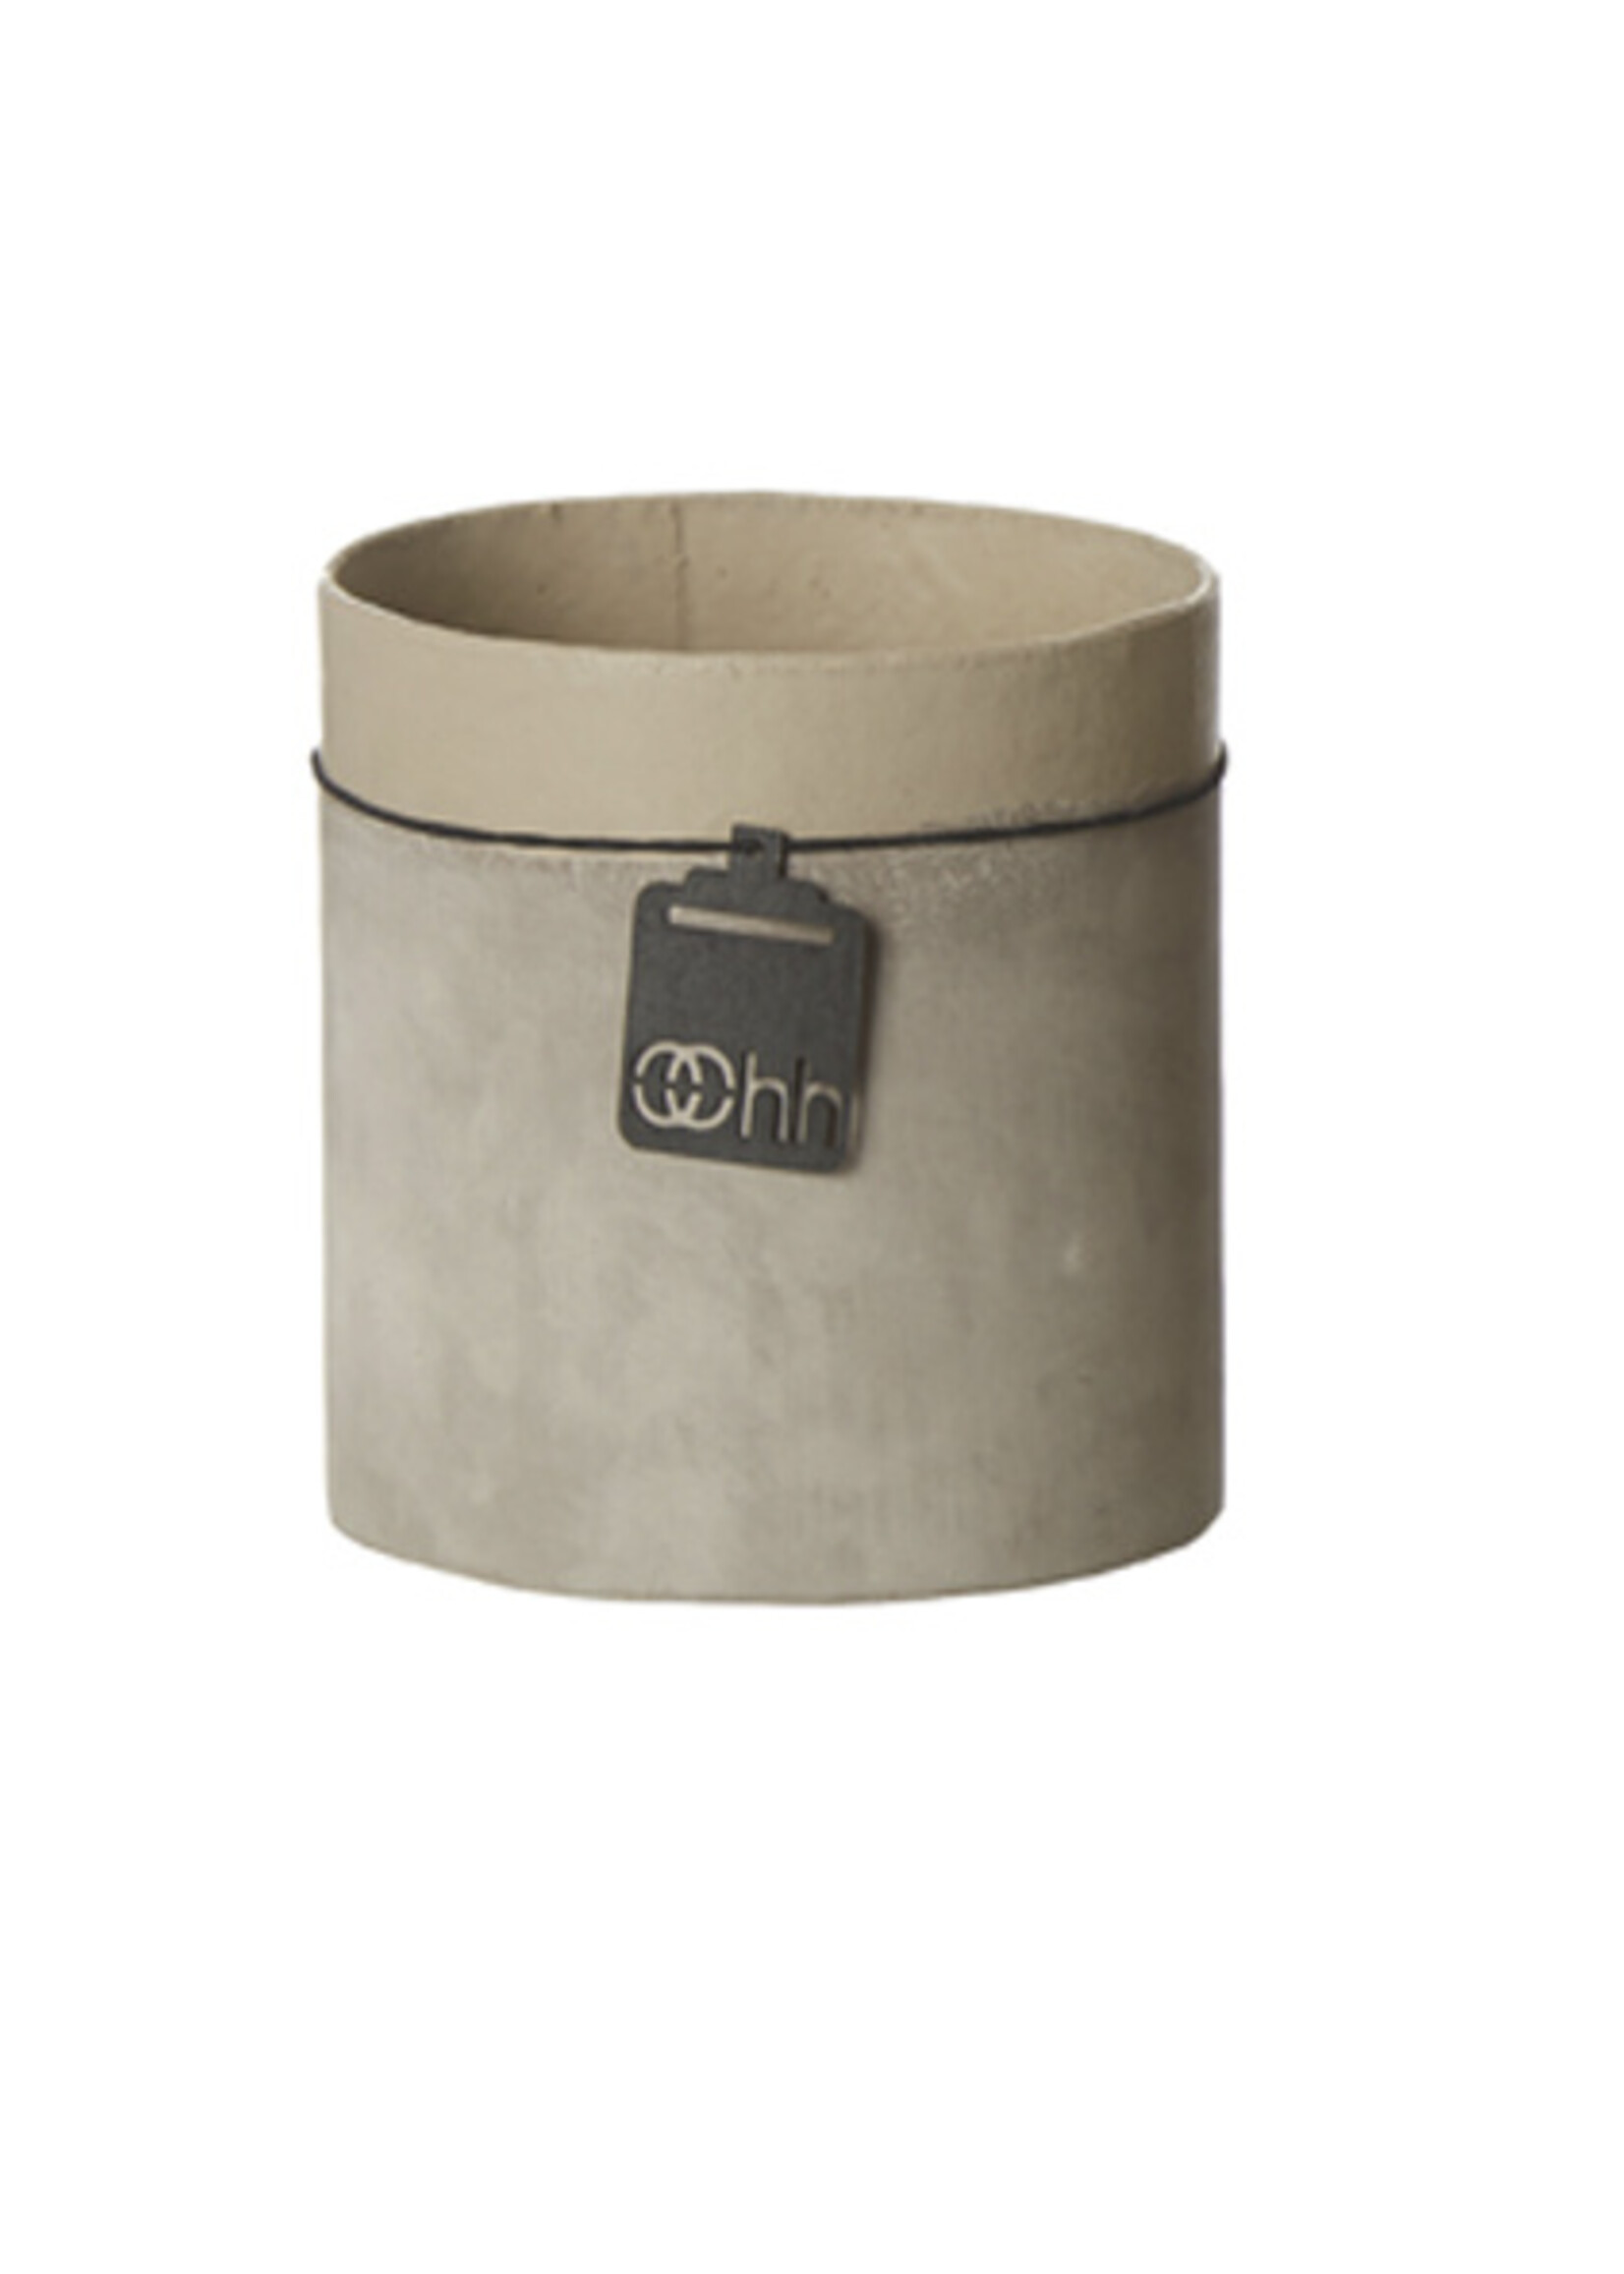 Oohh Cache-pot en papier recyclé avec apparence ciment, grand format